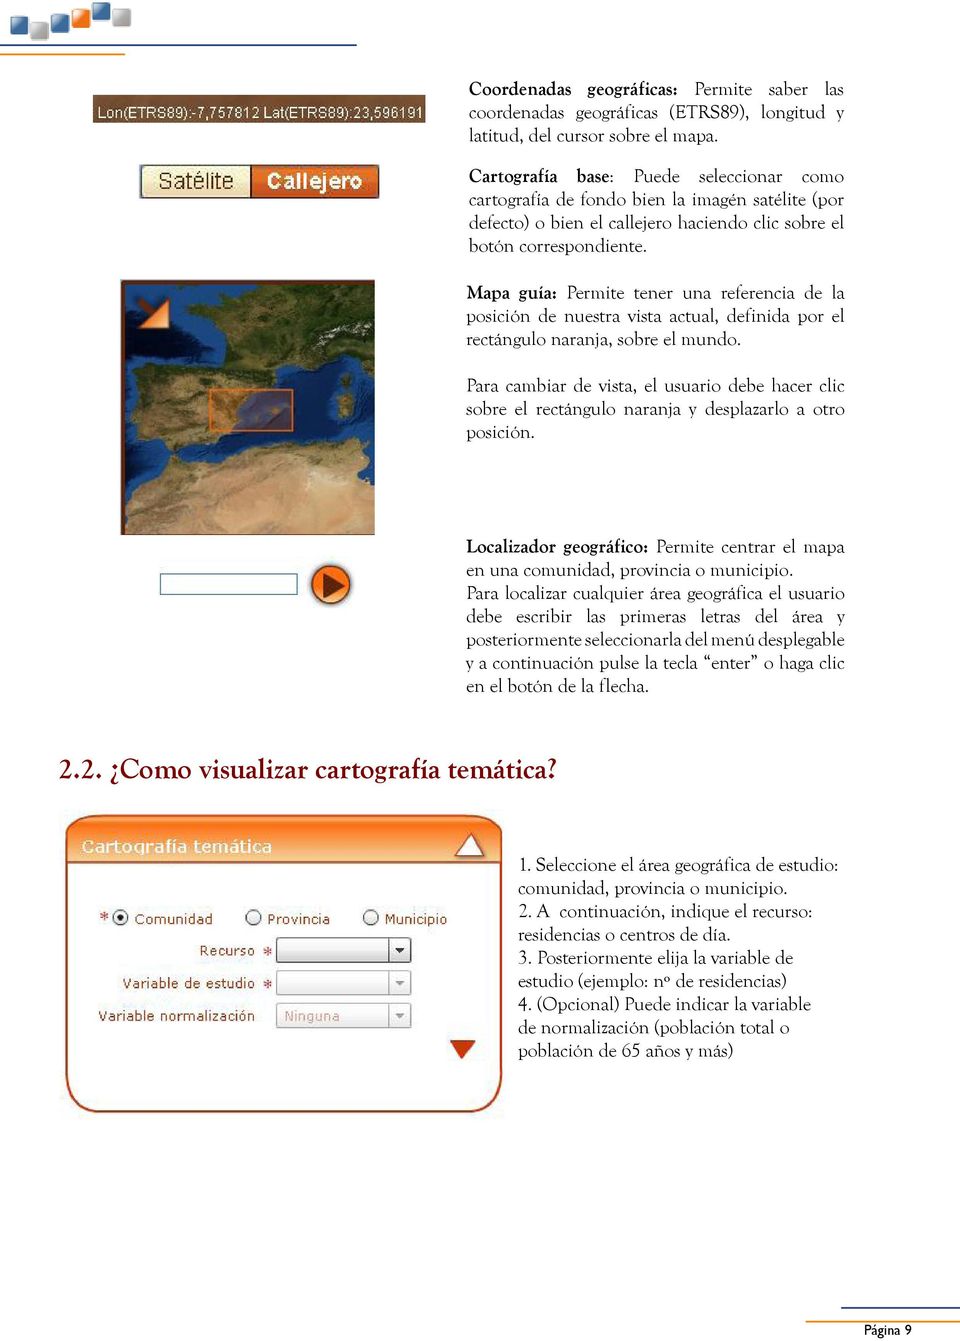 Mapa guía: Permite tener una referencia de la posición de nuestra vista actual, definida por el rectángulo naranja, sobre el mundo.